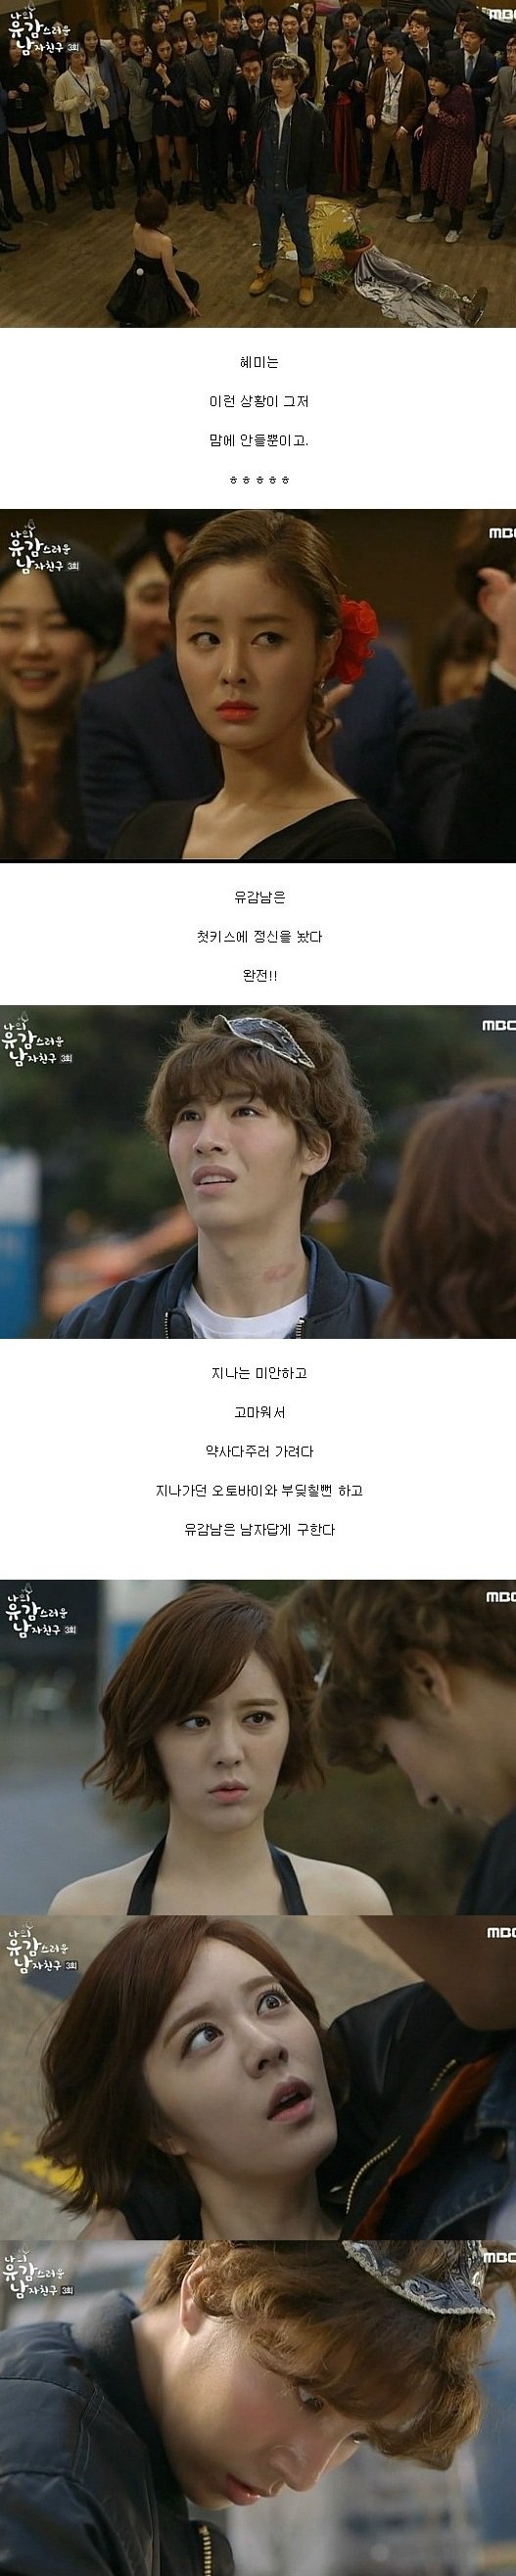 episodes 3 and 4 captures for the Korean drama 'My Unfortunate Boyfriend'